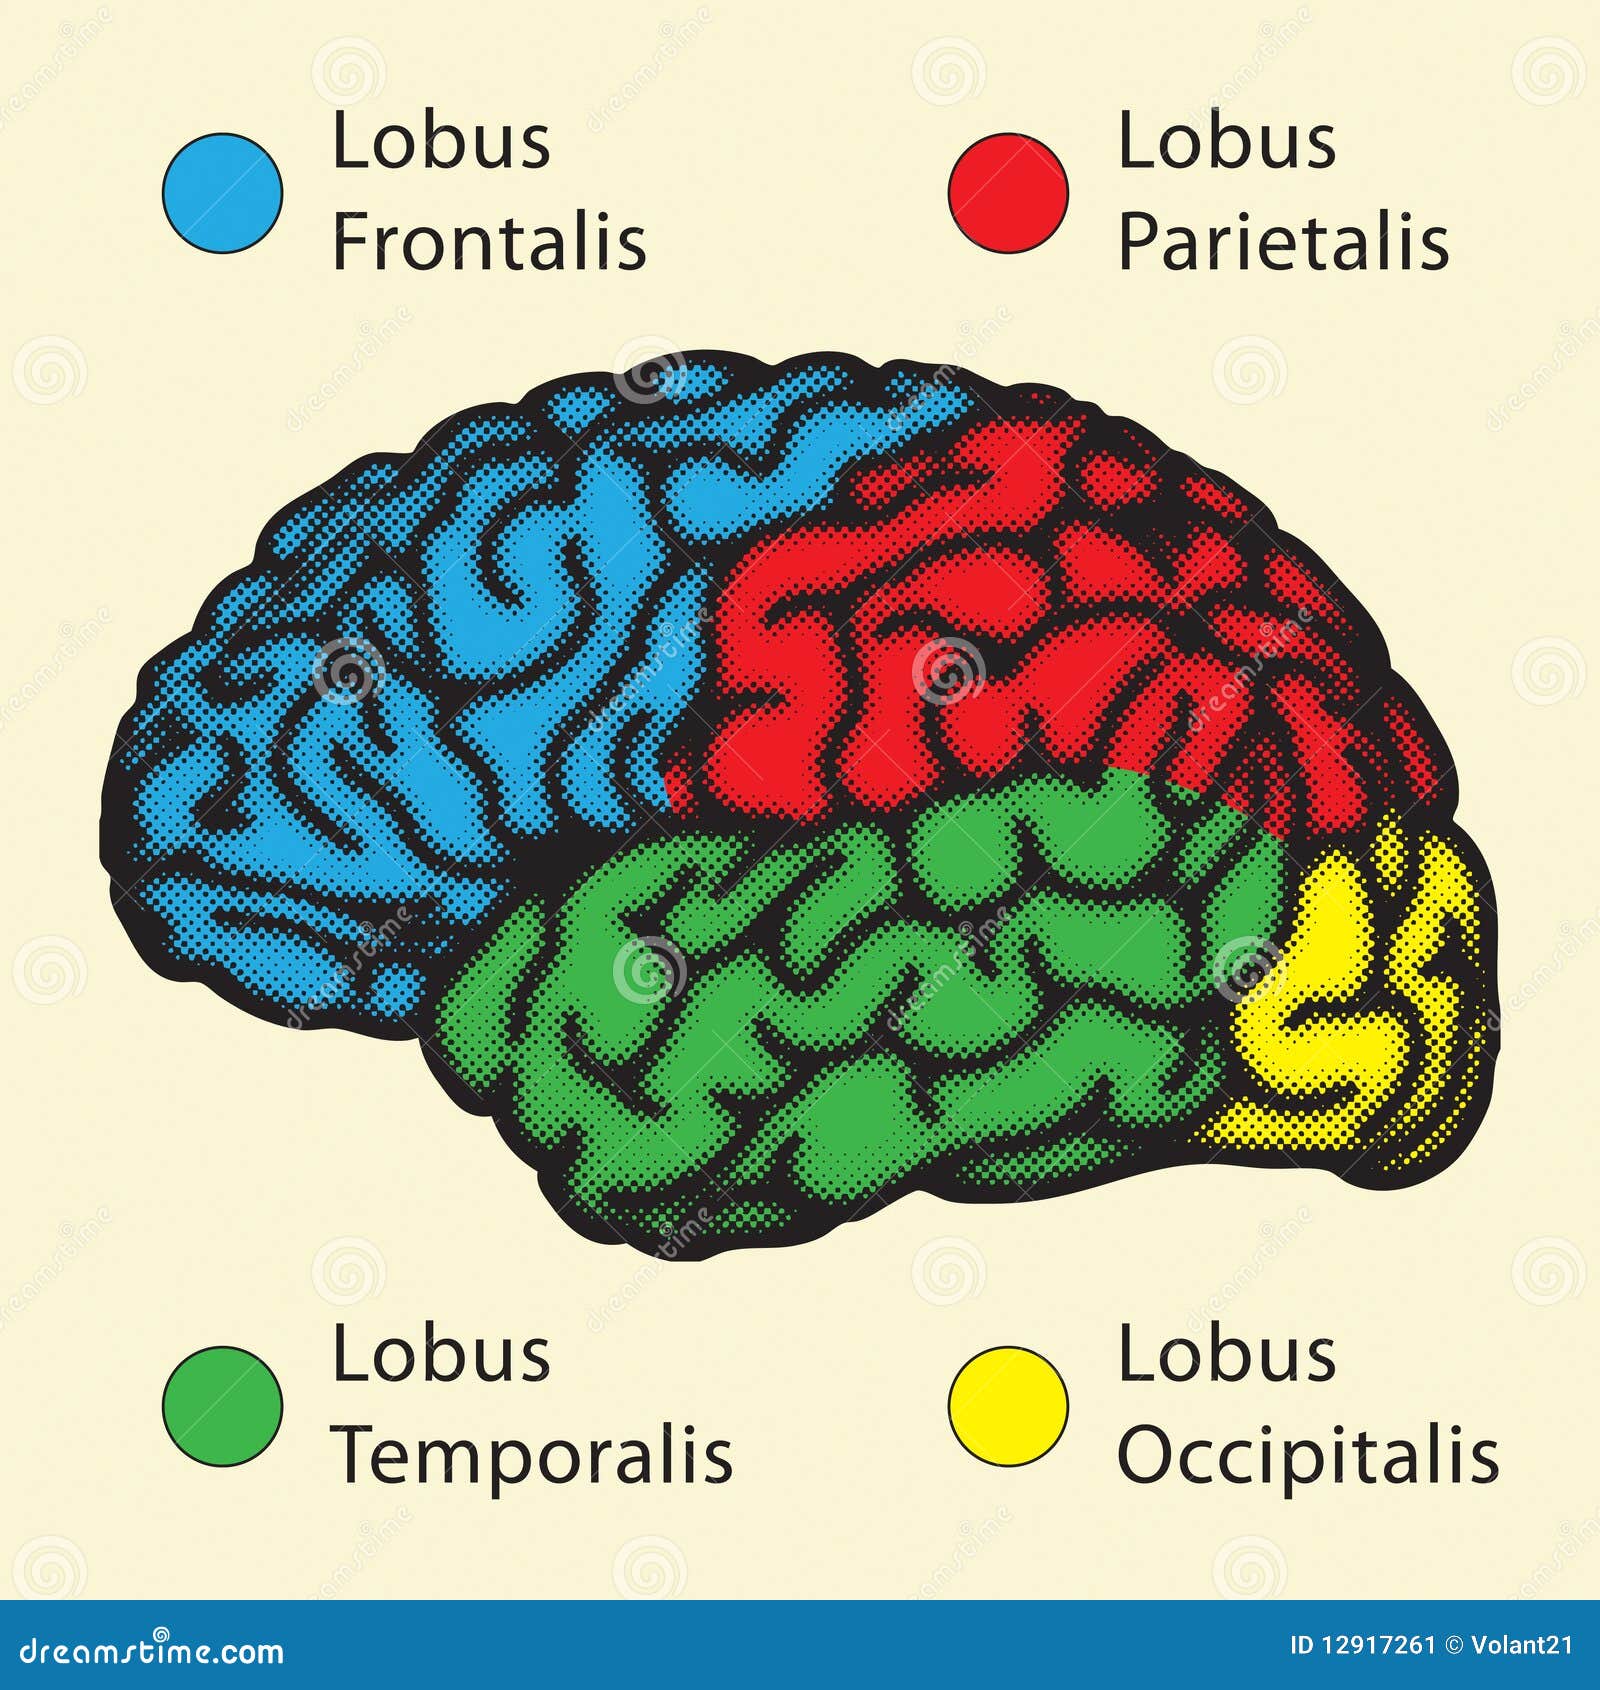 Латинское название мозга